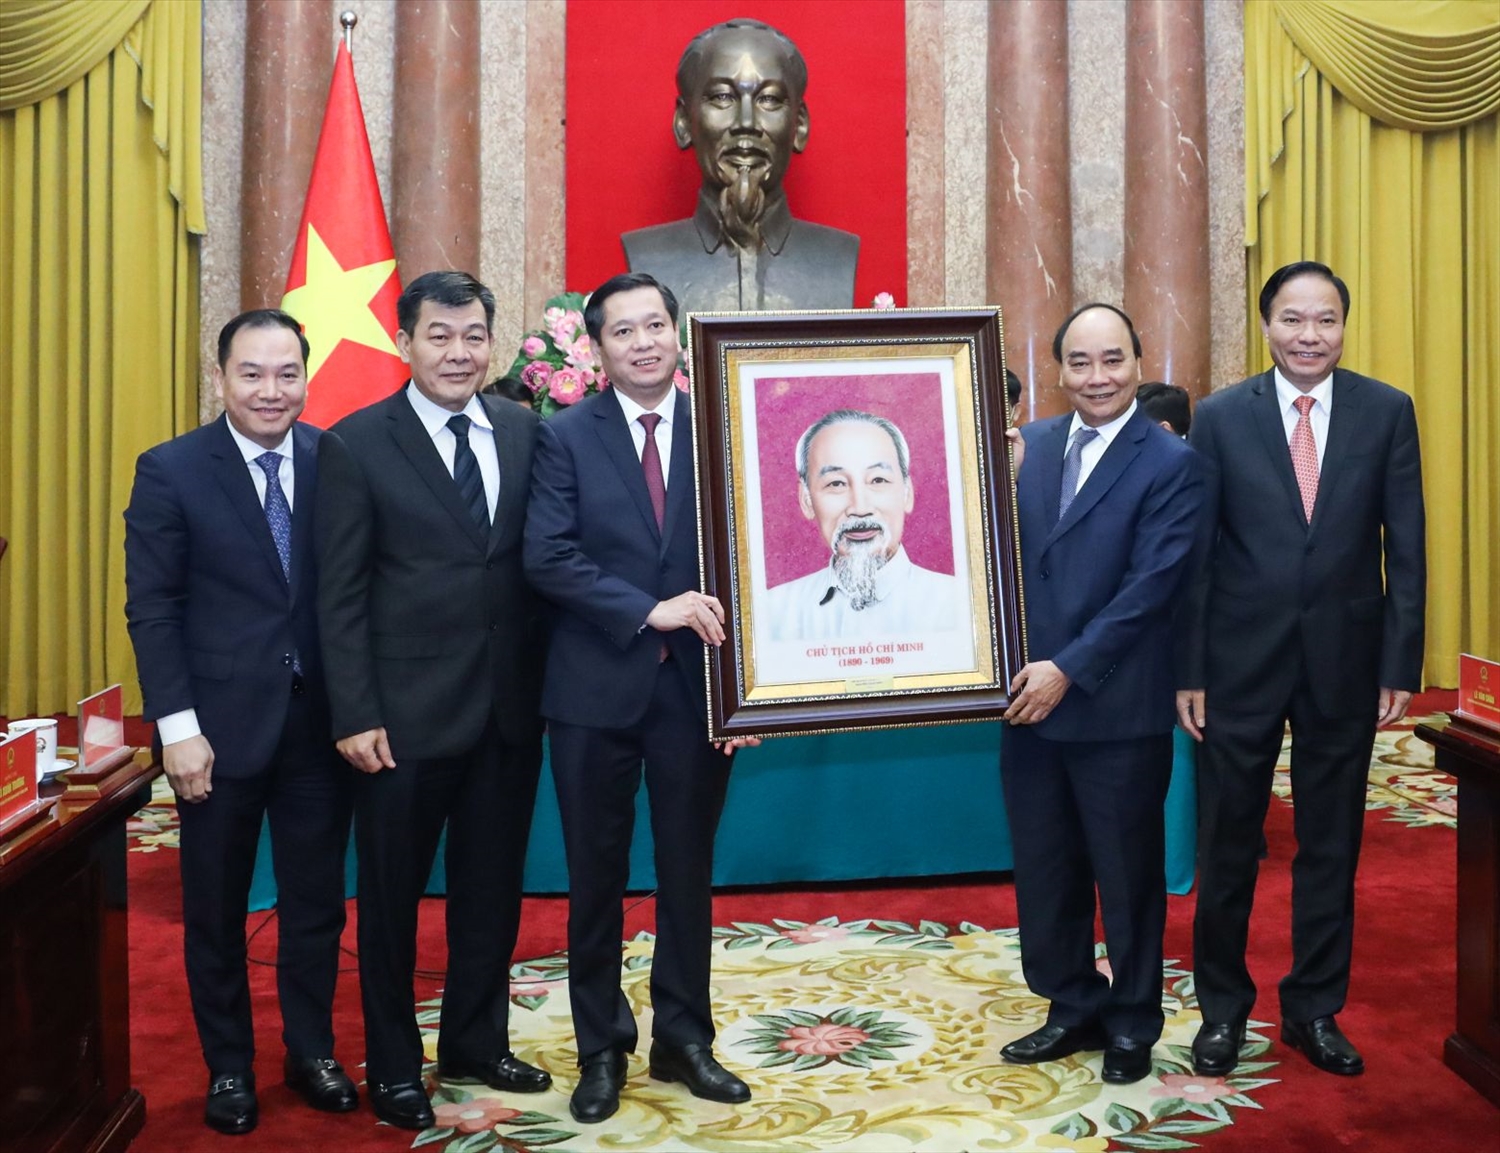 Chủ tịch nước Nguyễn Xuân Phúc tặng tranh chân dung Chủ tịch Hồ Chí Minh cho Đảng bộ Khối Doanh nghiệp Trung ương